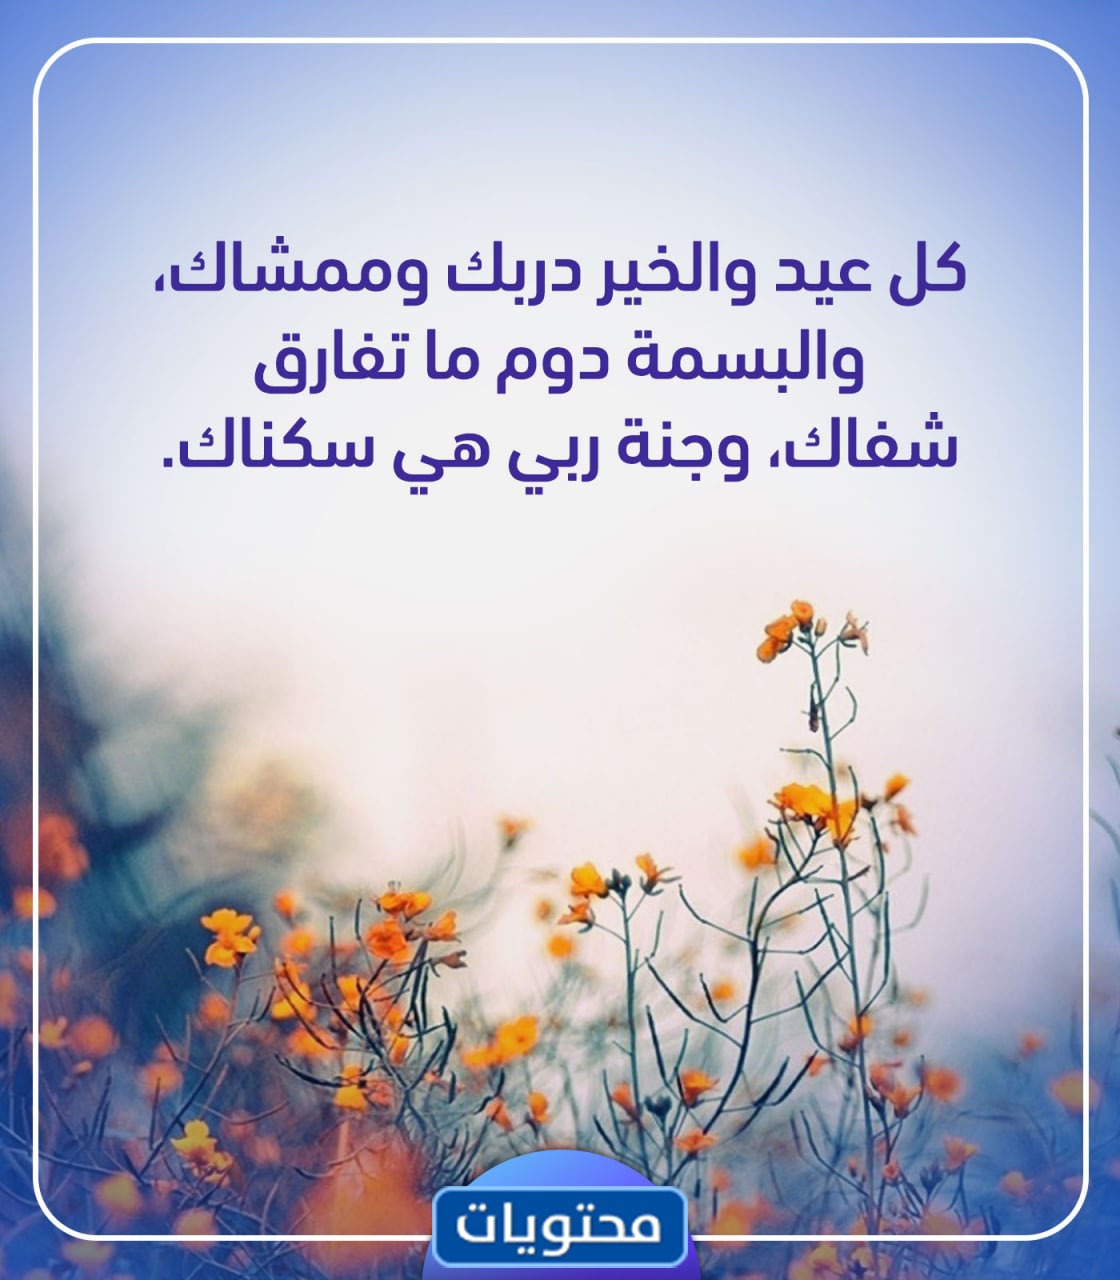 كلمات تهنئة عيد الفطر المبارك 2021 واجمل العبارات والخواطر ...